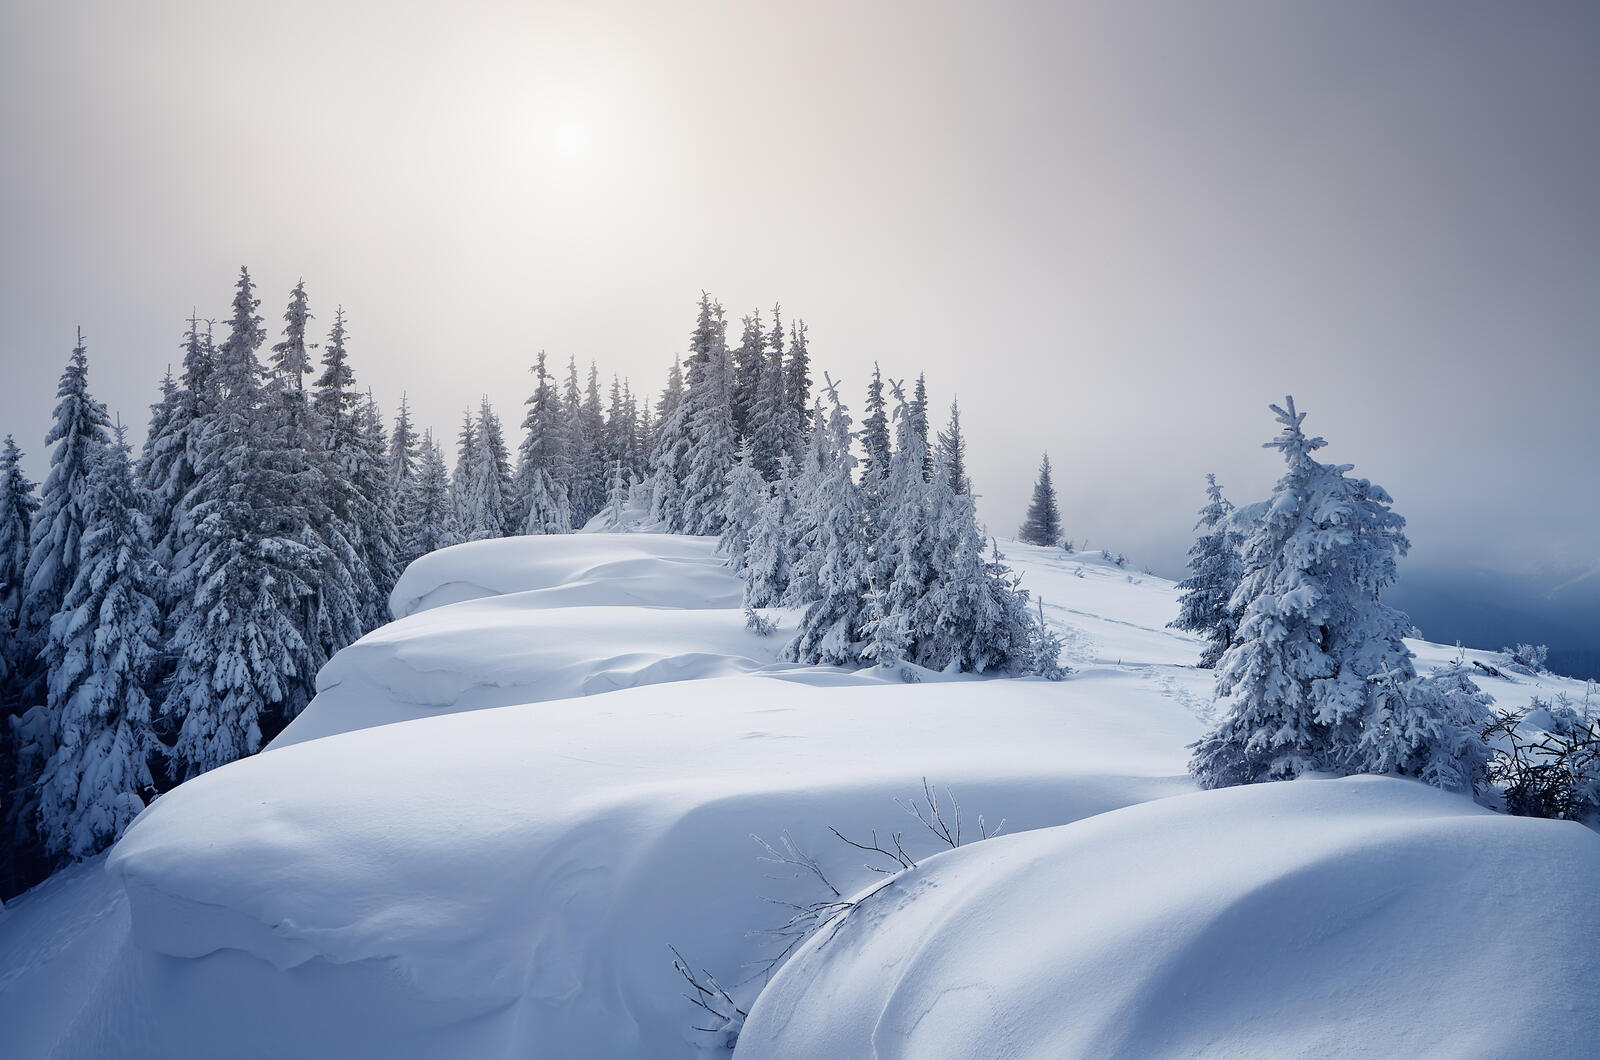 Wallpapers landscape winter forest landscapes on the desktop